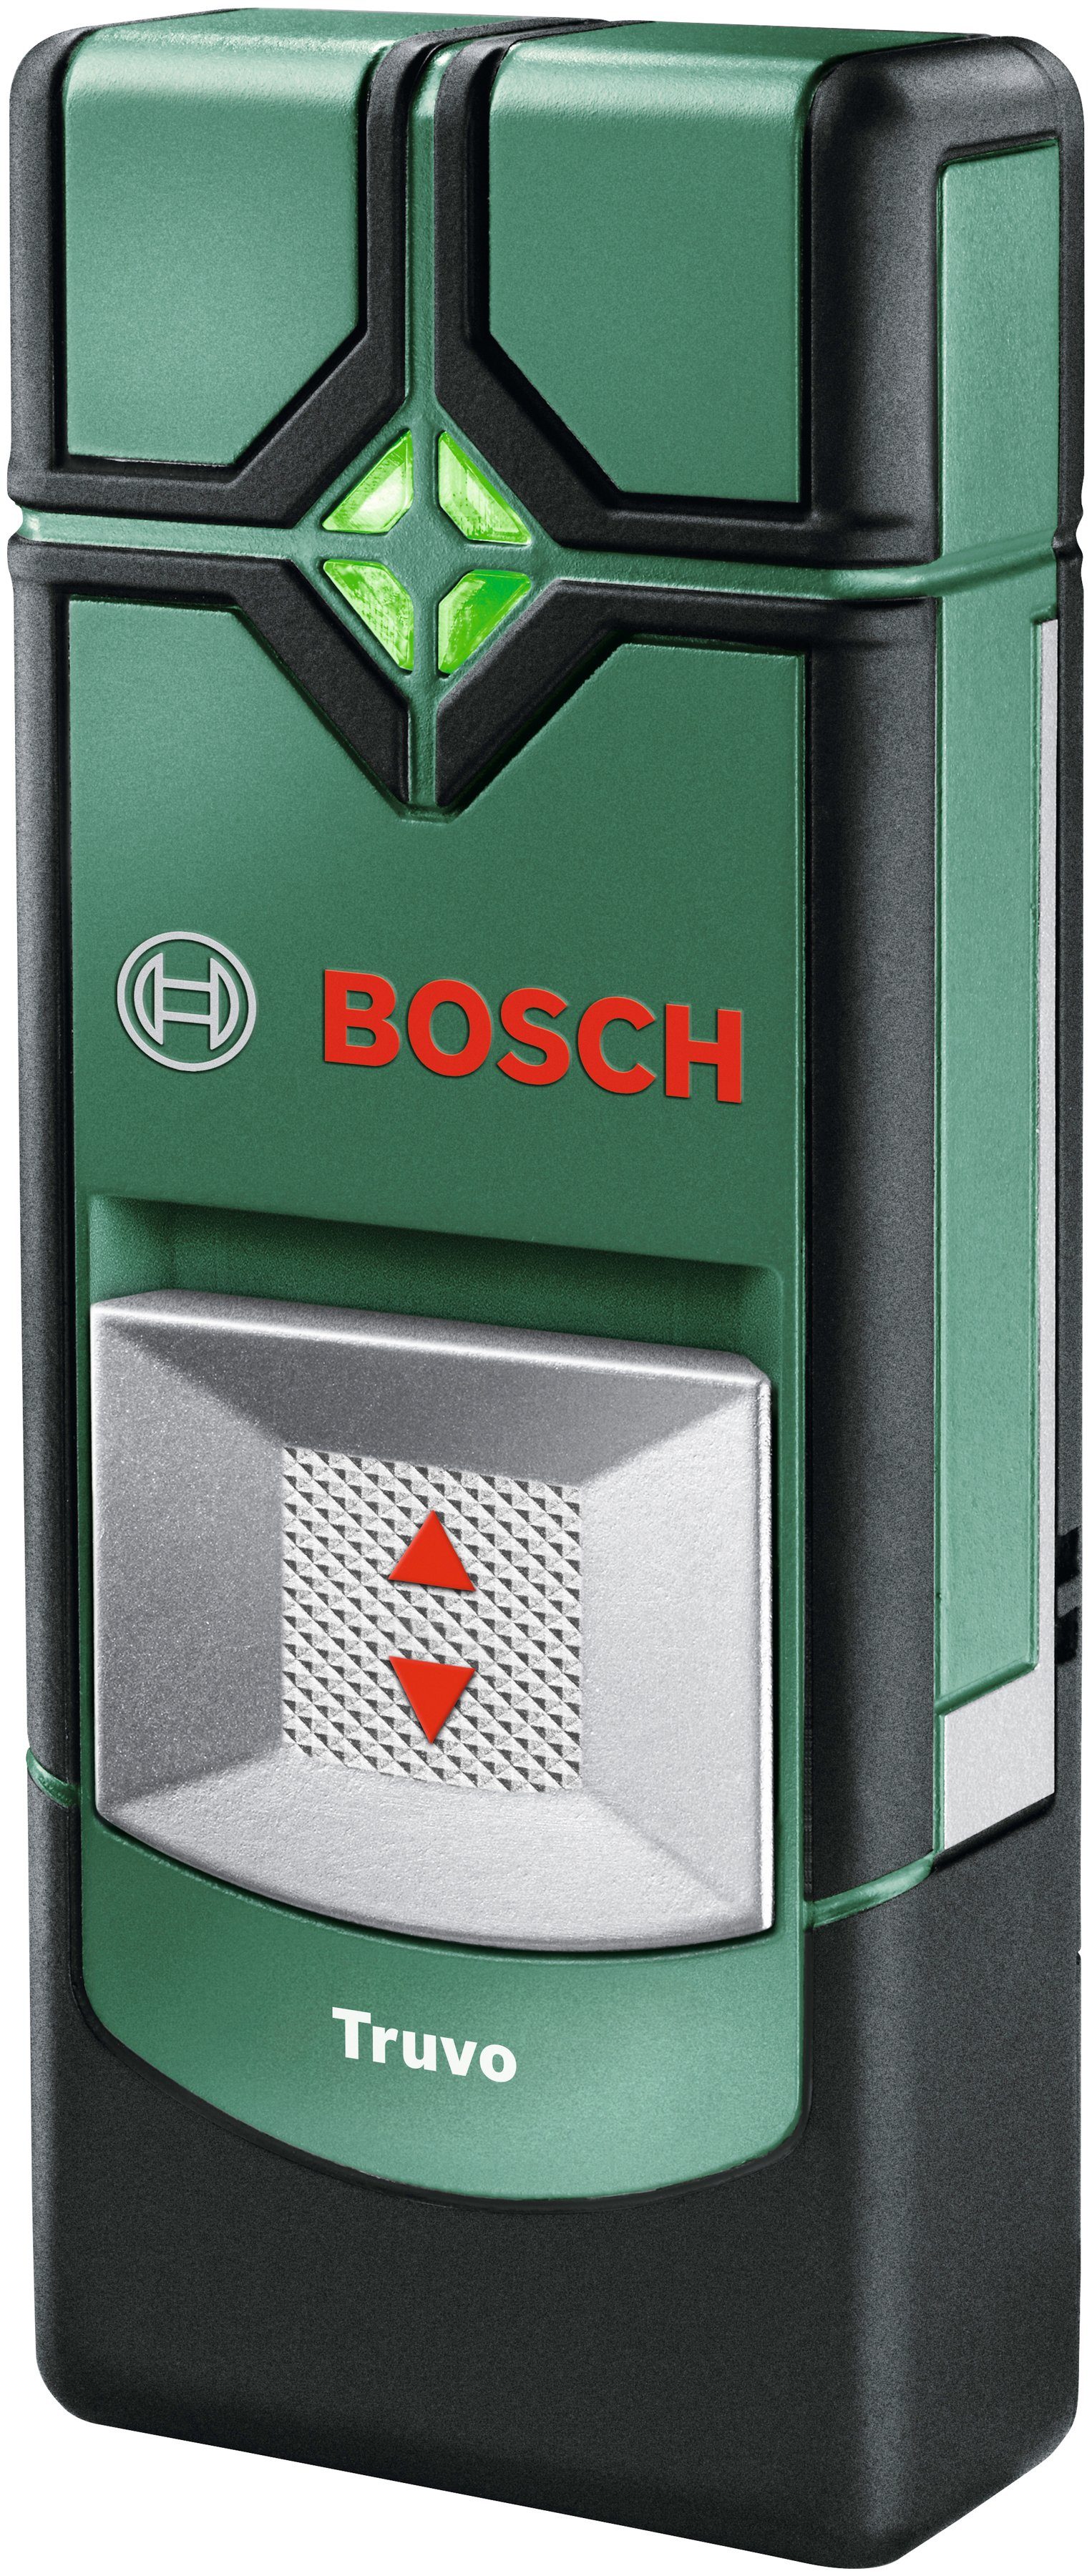 Bosch Home & Garden Leitungsortungsgerät findet stromführende Leitungen Truvo, und Metalle